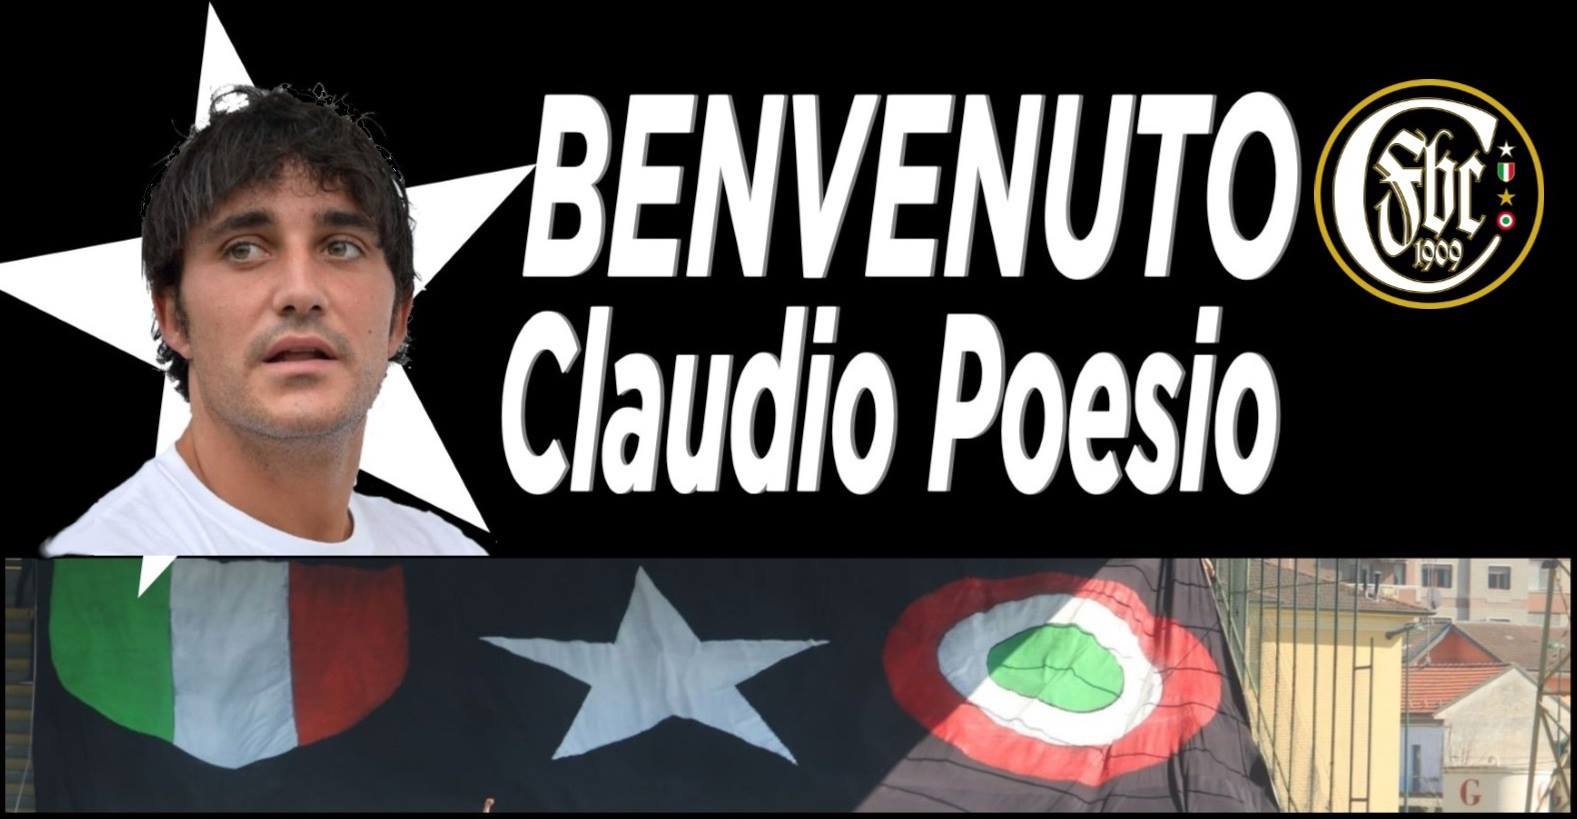 UFFICIALE: Claudio Poesio è nerostellato